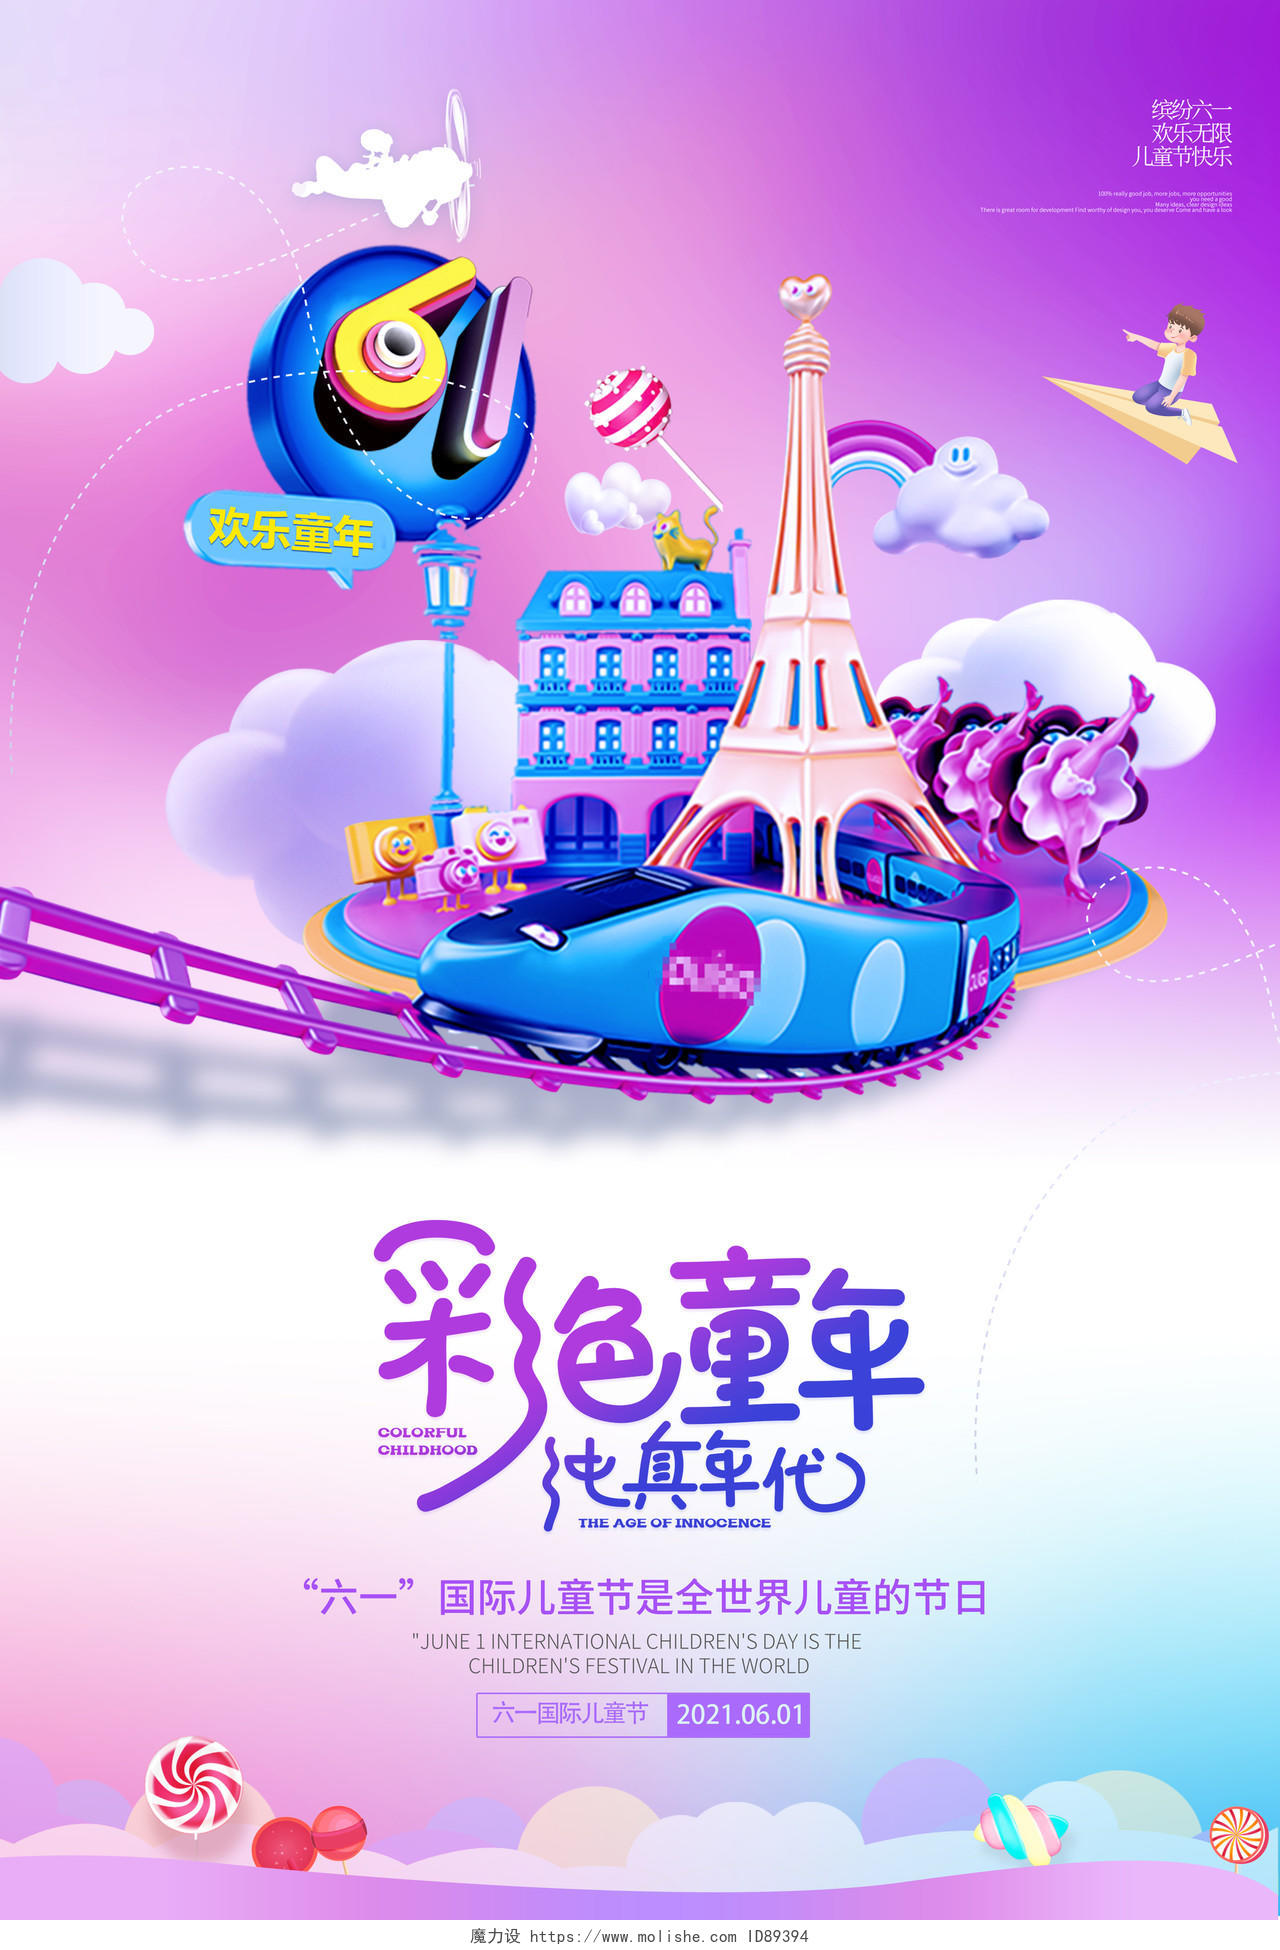 2021紫色六一儿童节彩色童年纯真年代儿童节创意海报六一儿童节61儿童节创意元素